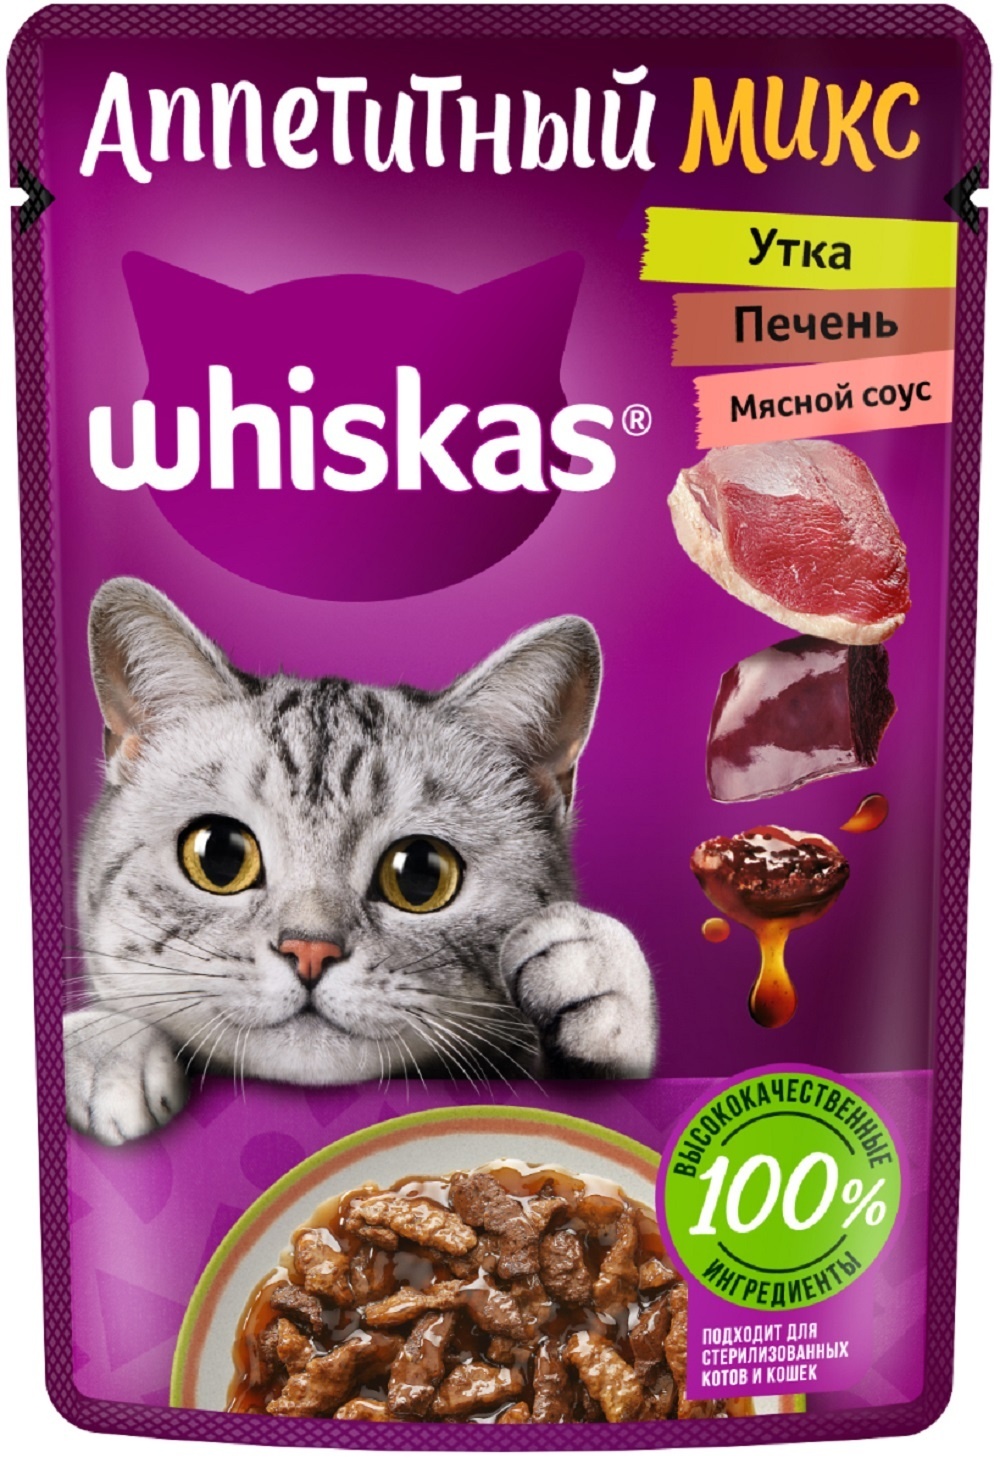 Whiskas Whiskas влажный корм «Аппетитный микс» для кошек, с уткой и печенью в мясном соусе (75 г)